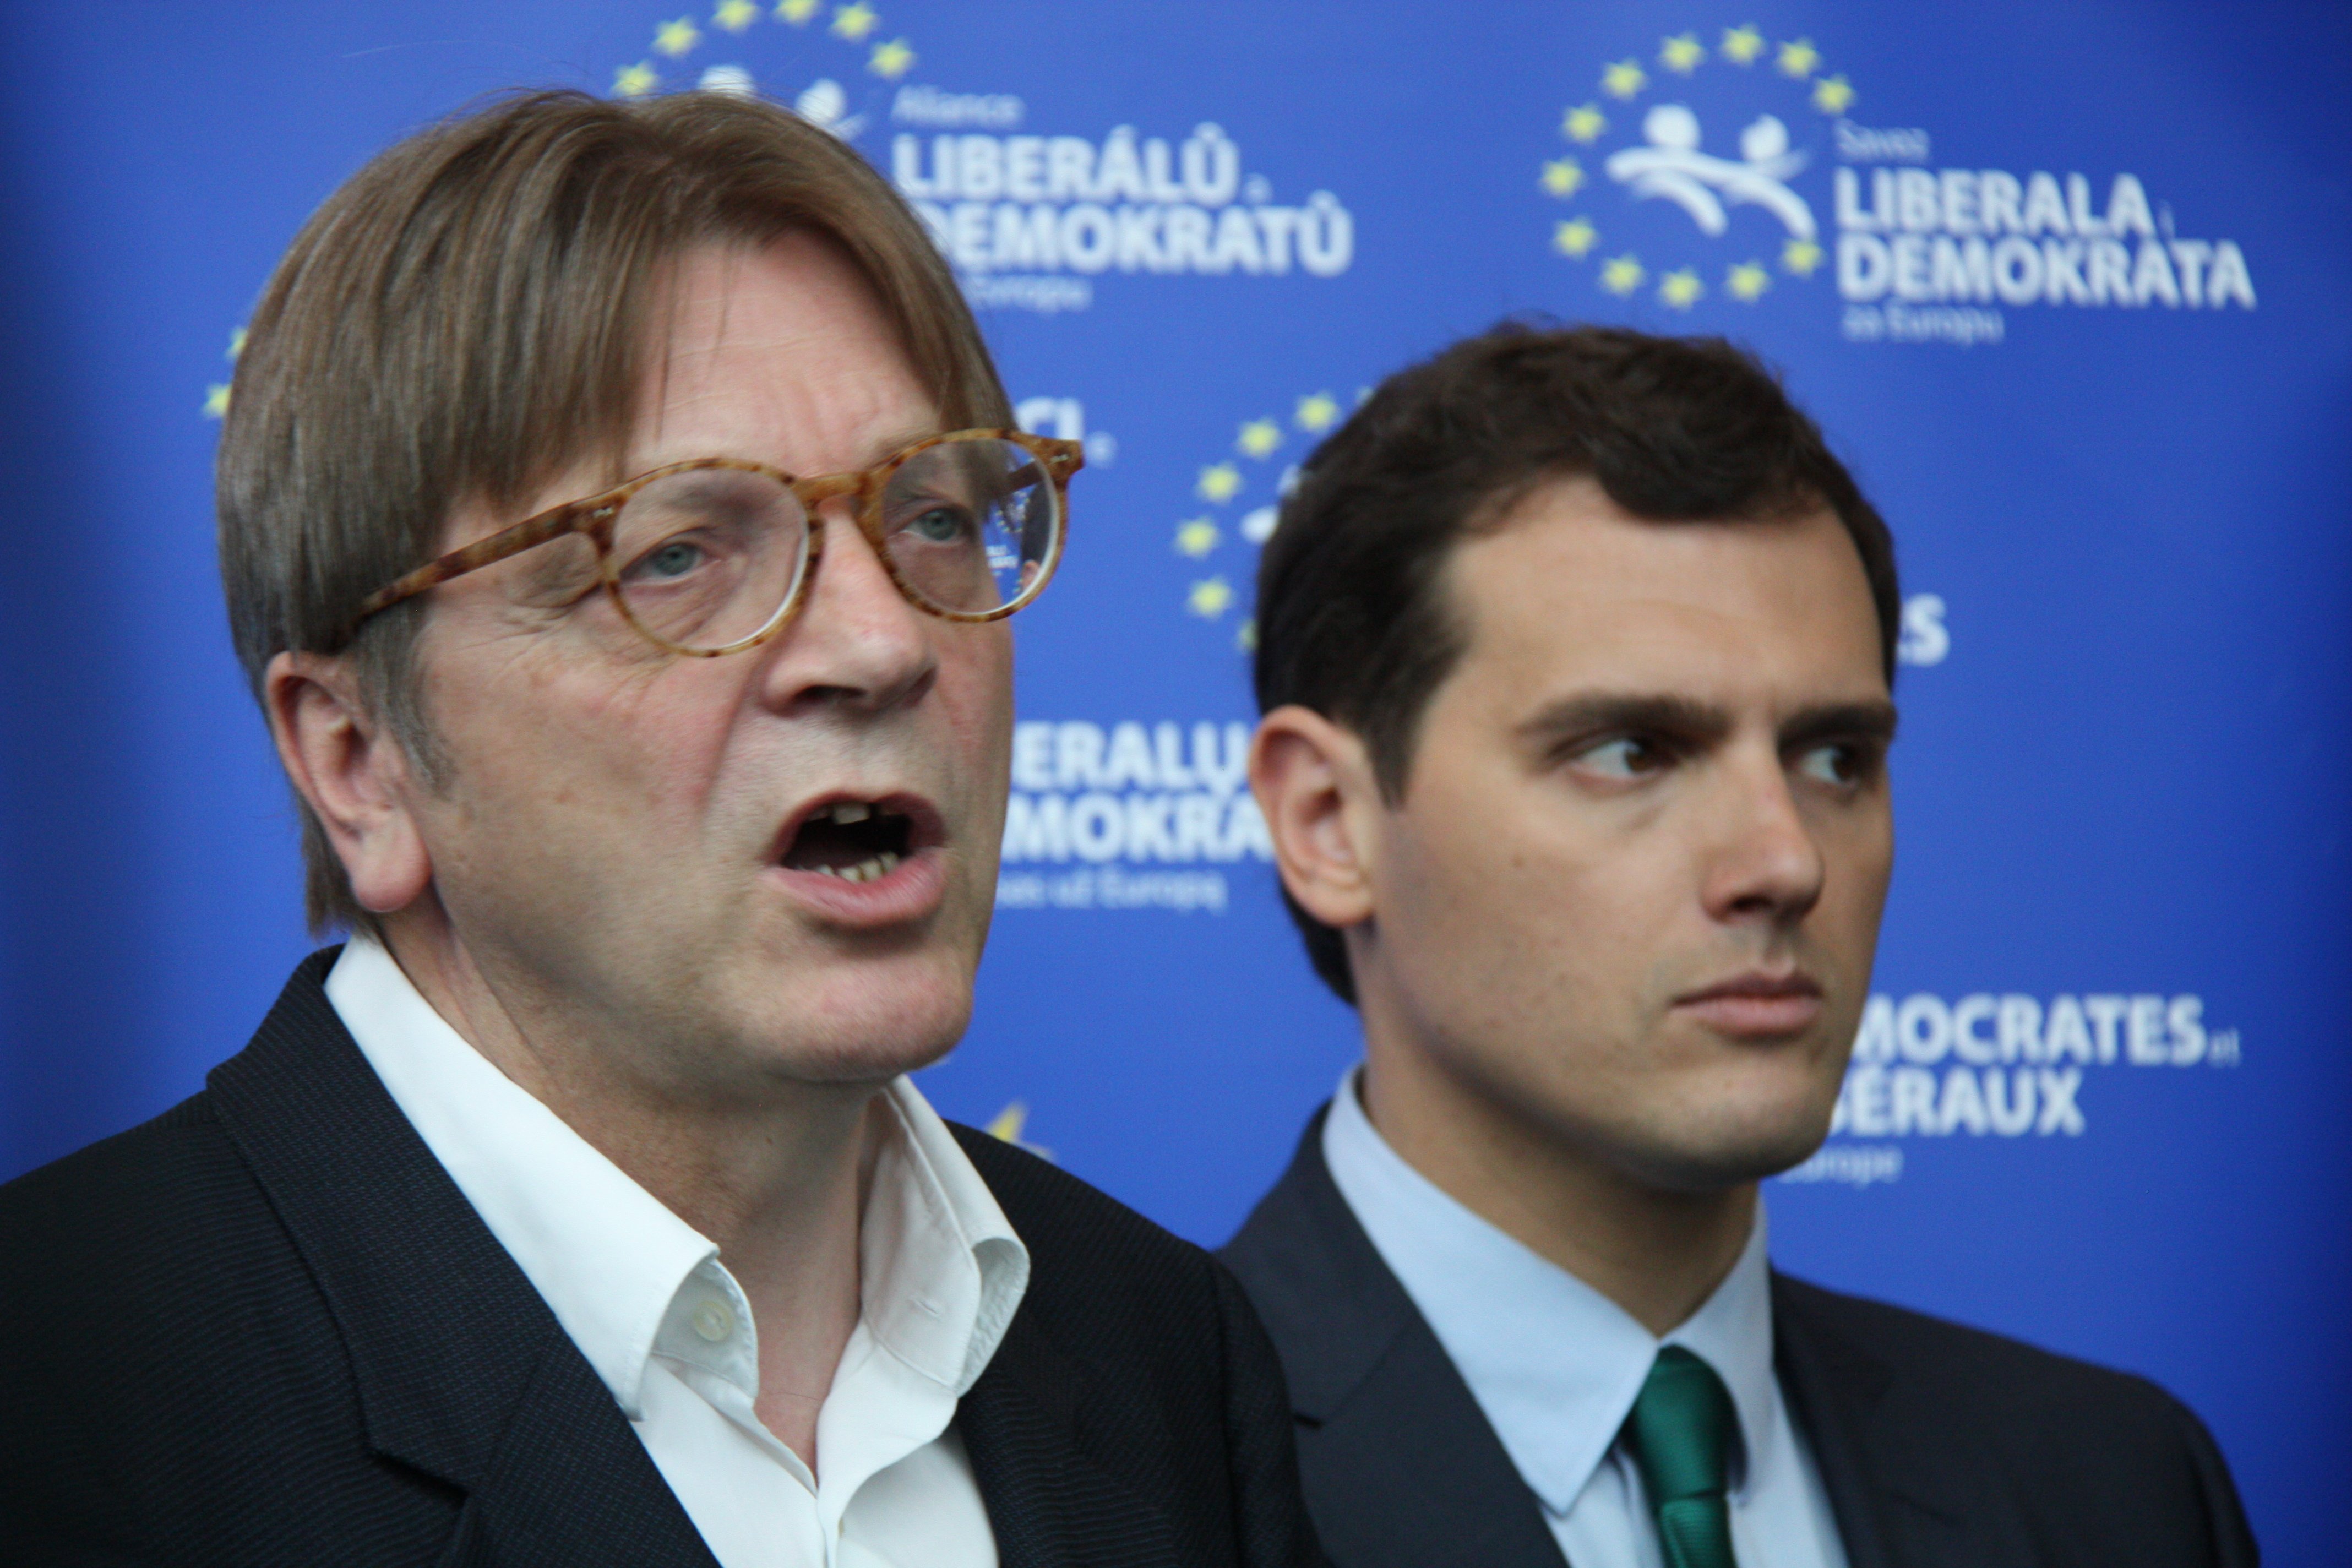 El líder de los liberales europeos justifica el pacto PP-Cs-Vox en Andalucía